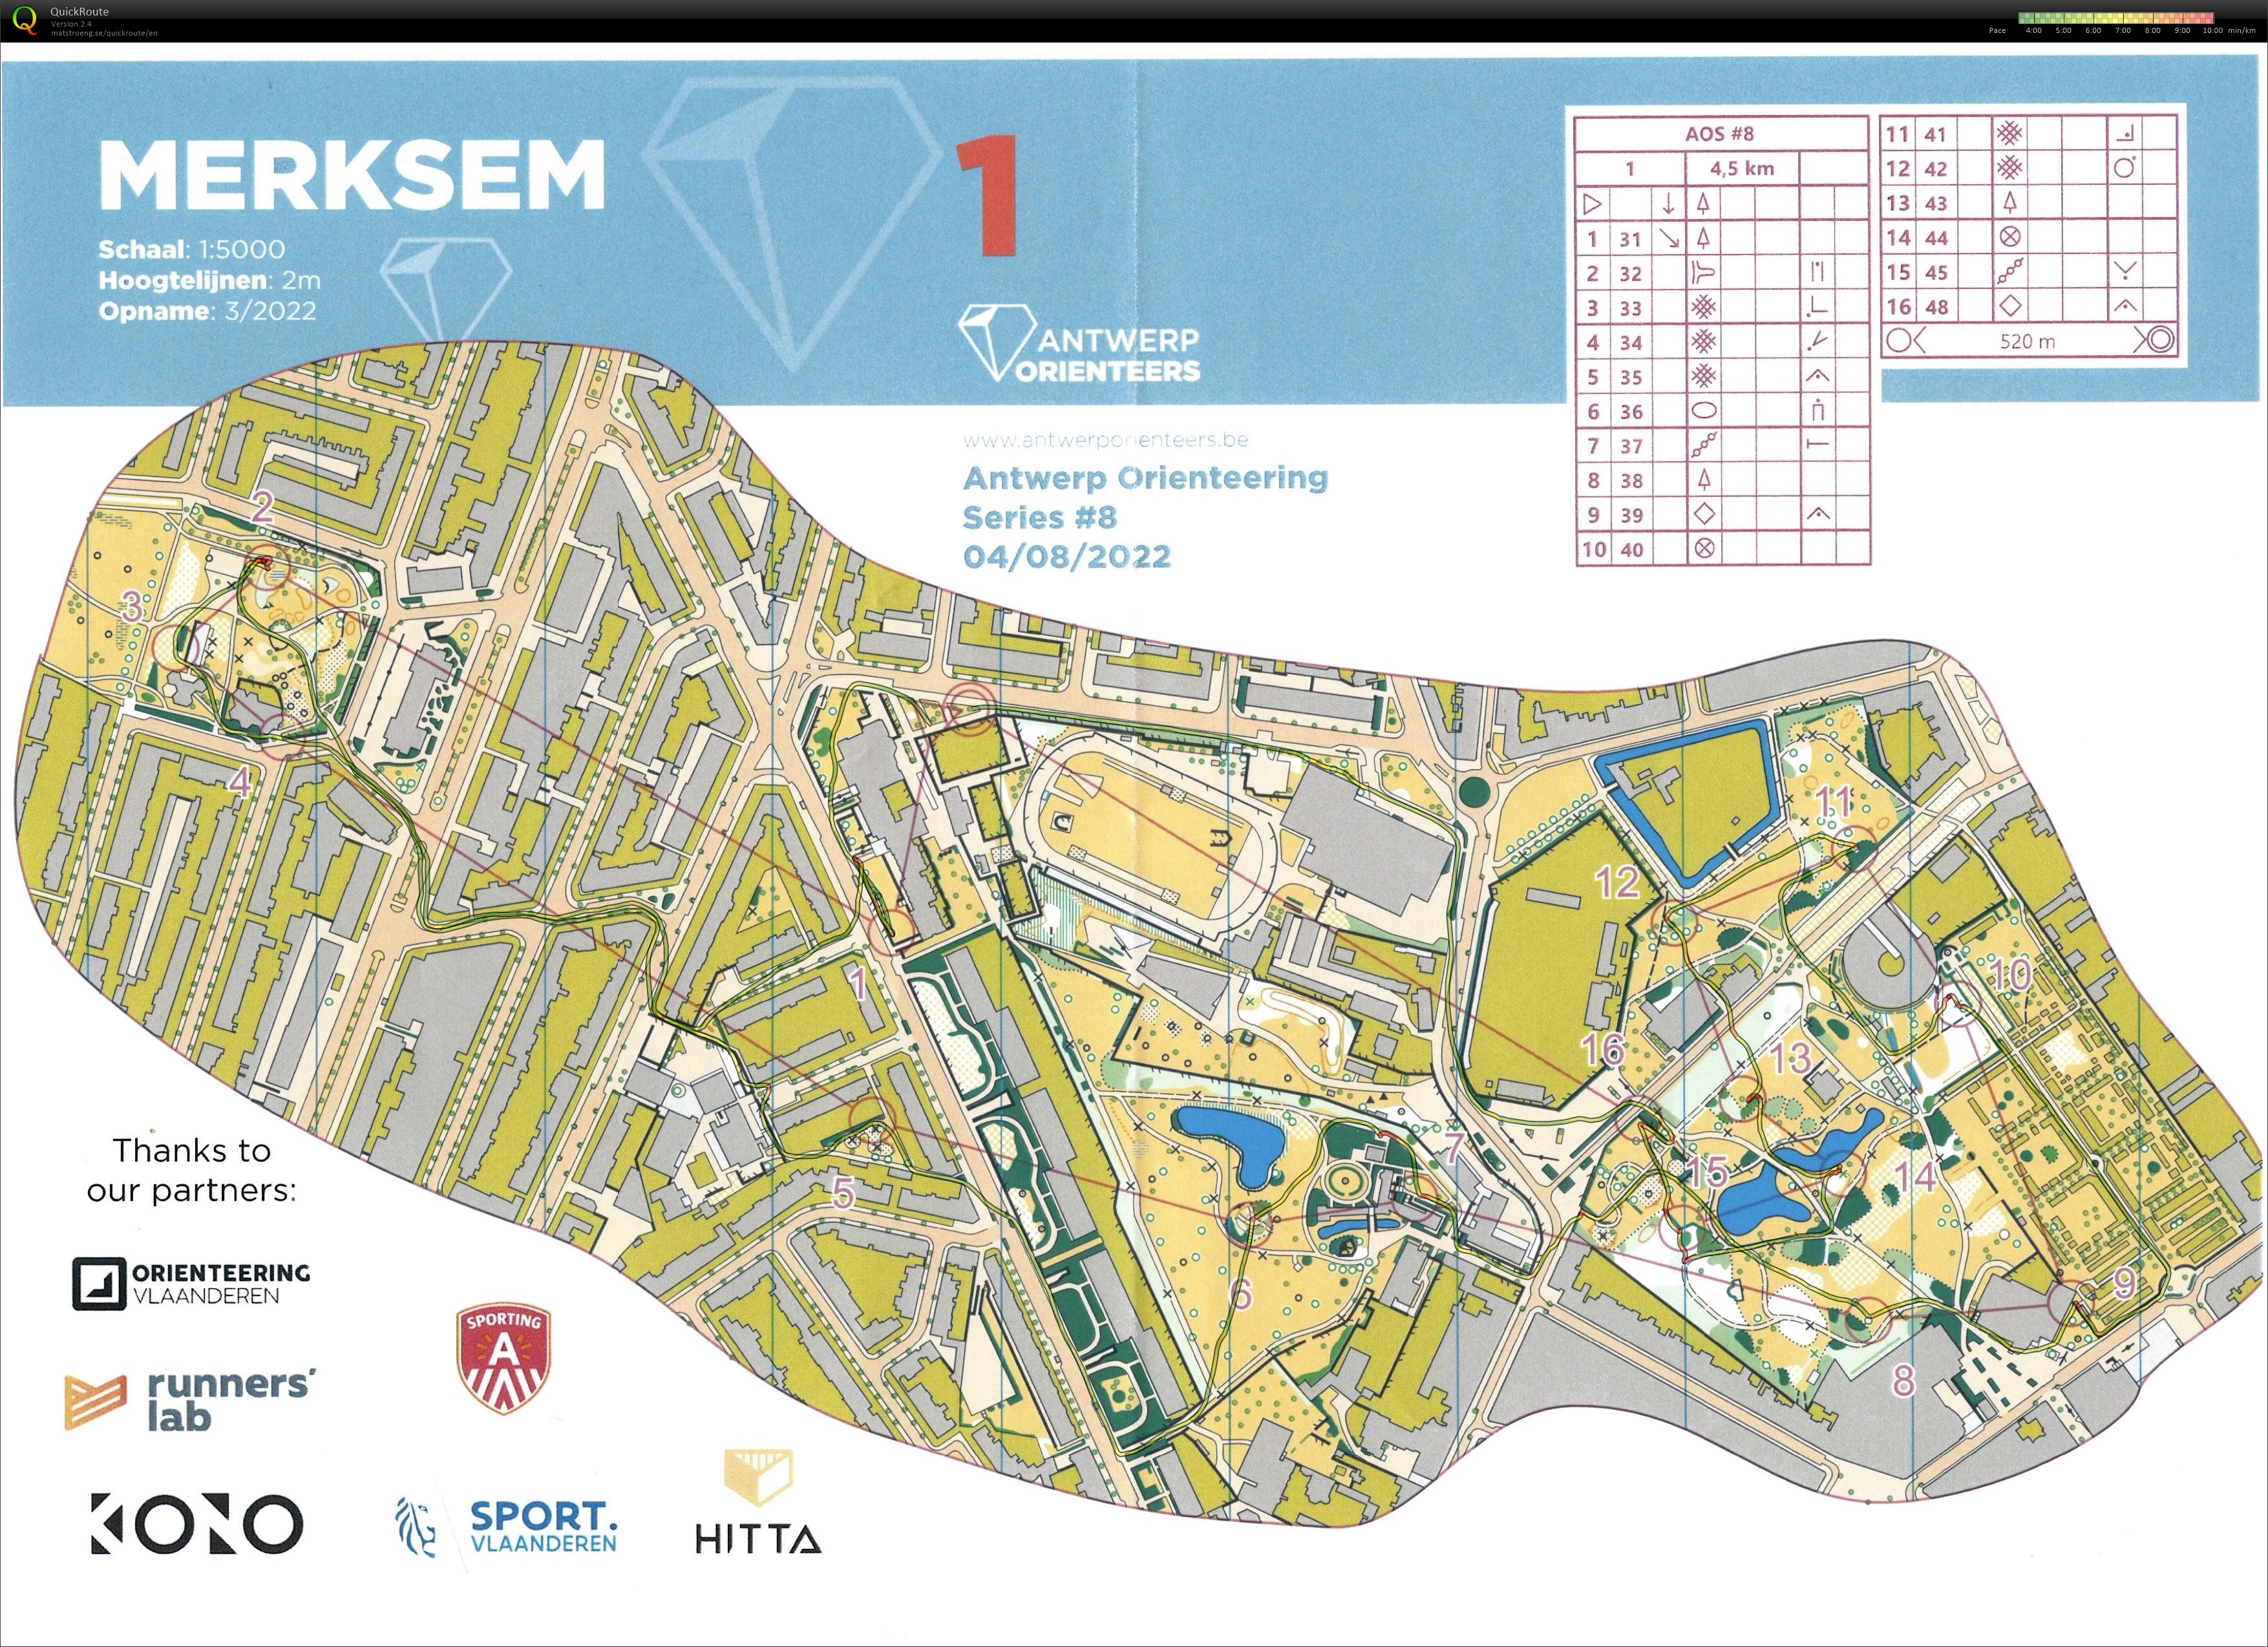 Antwerp Orienteering Series - Merksem - 1 (04/08/2022)